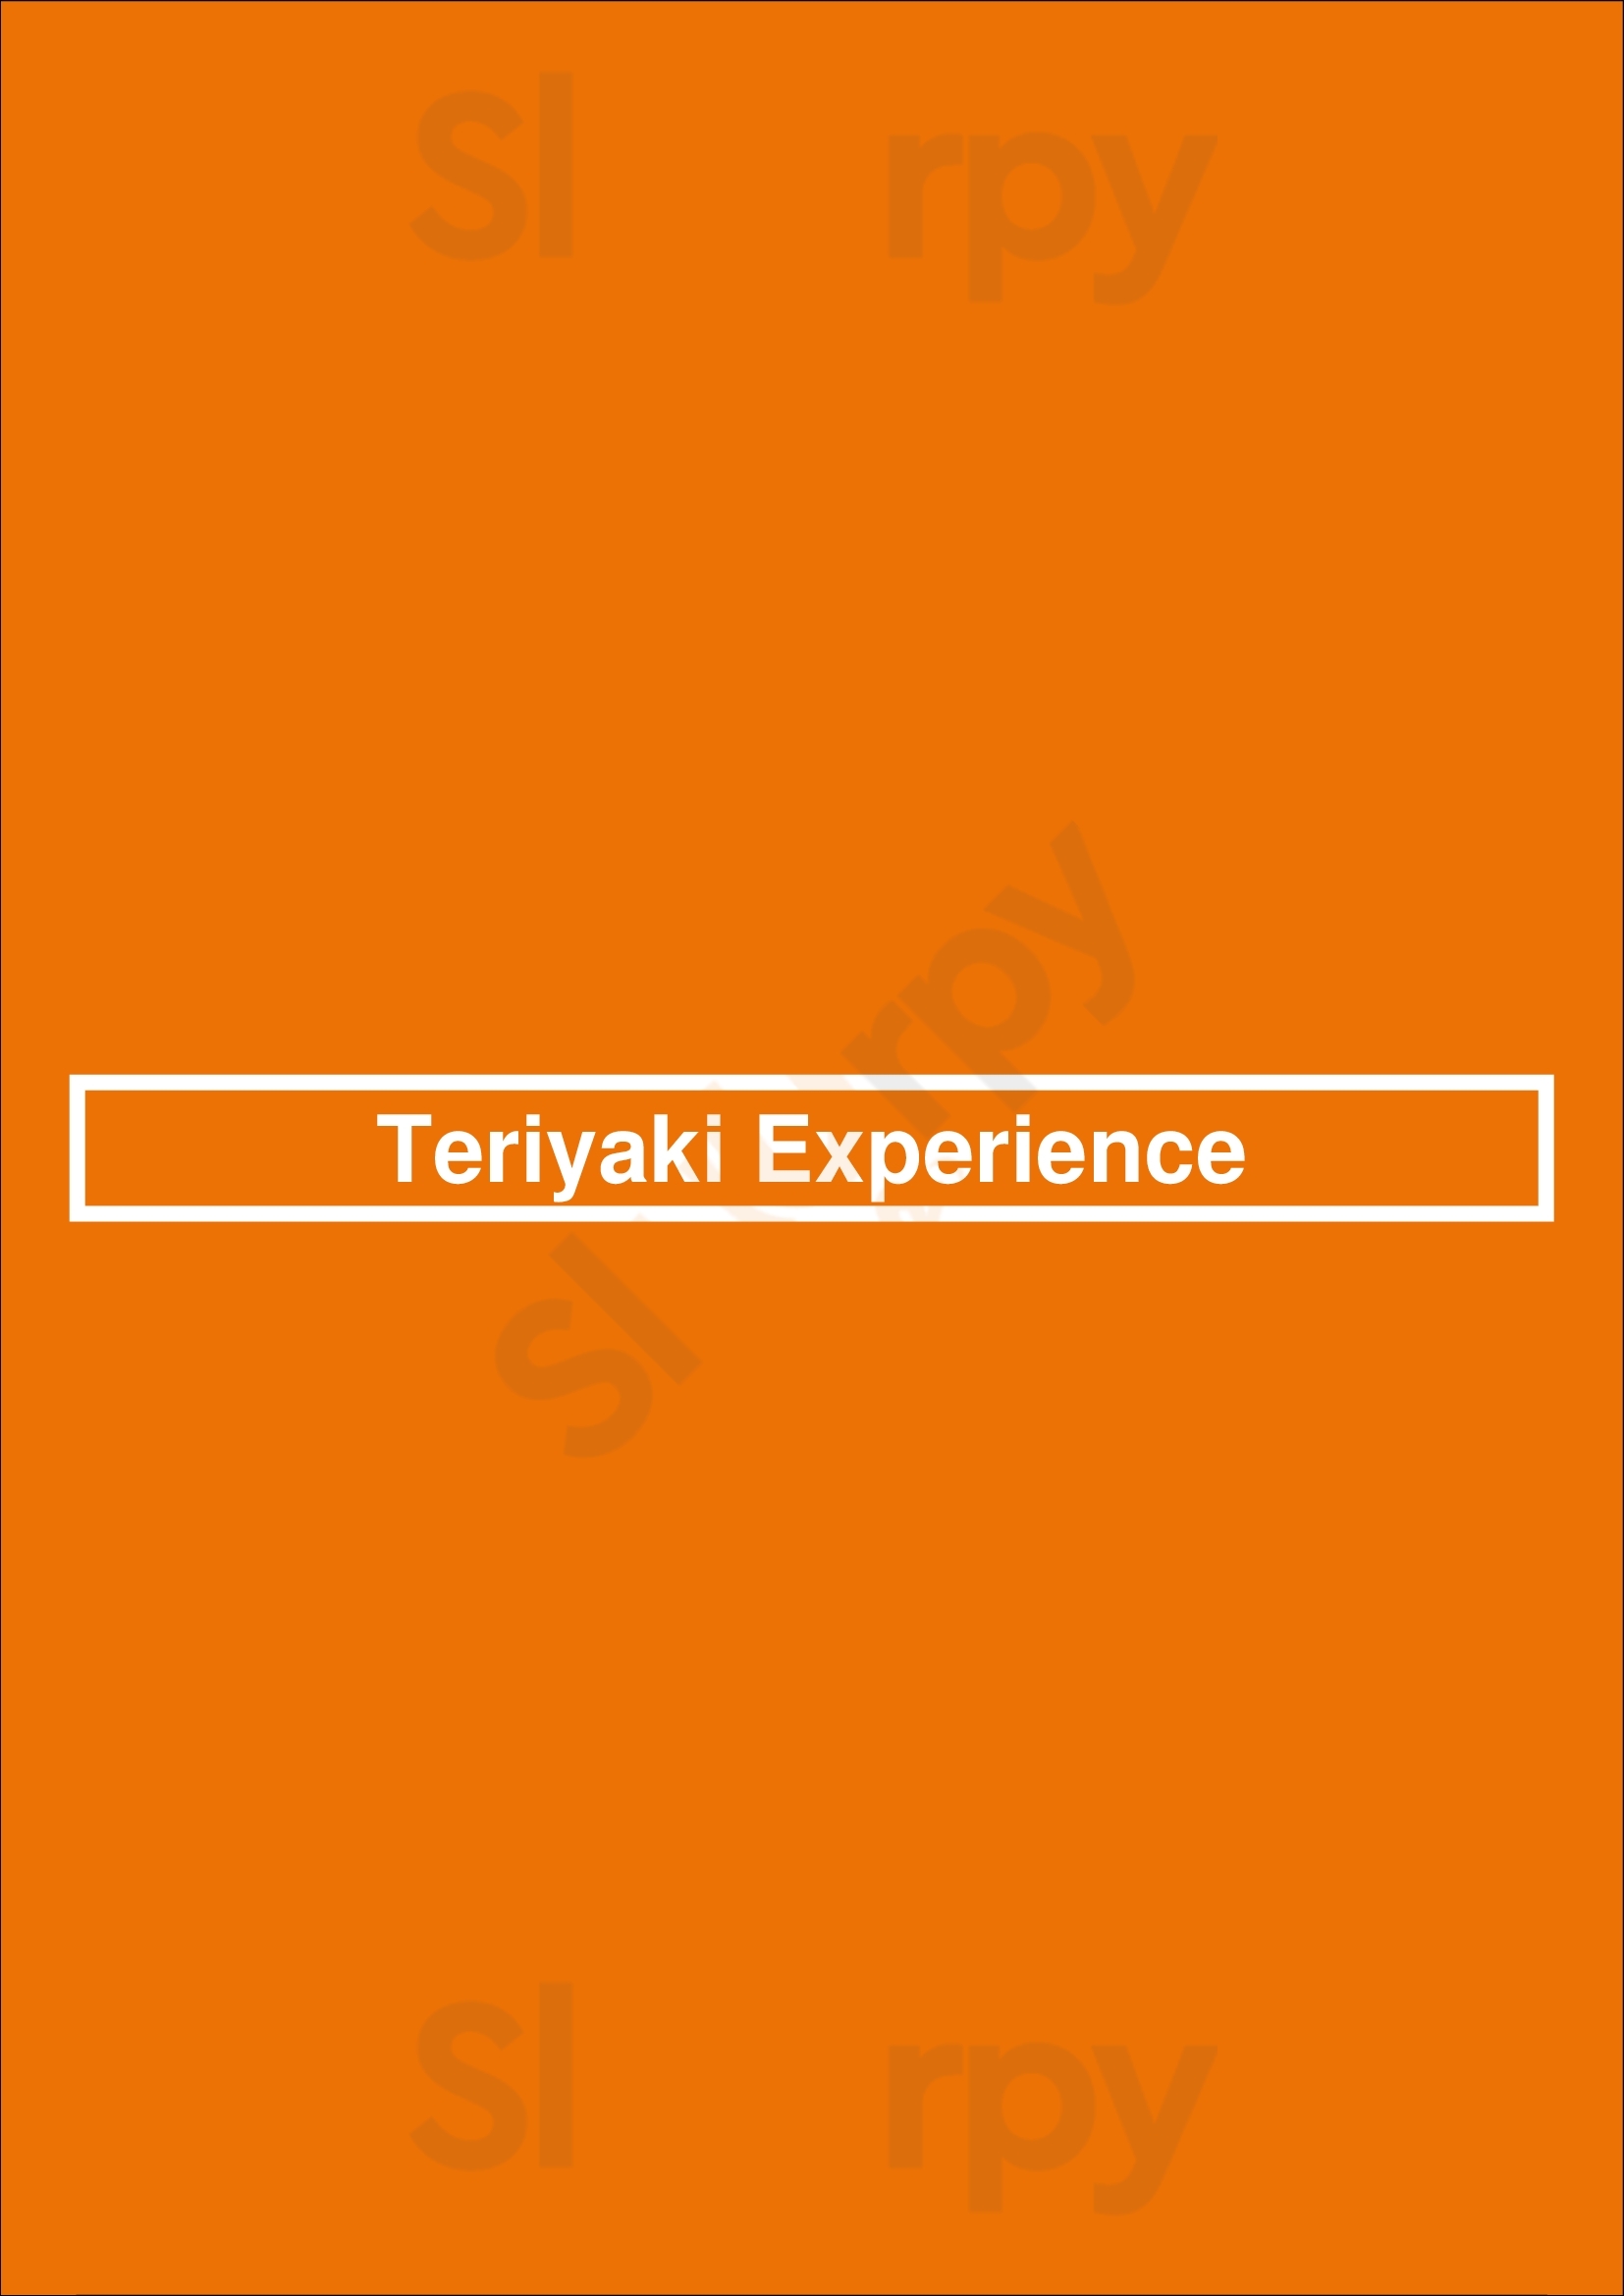 Teriyaki Experience Oakville Menu - 1